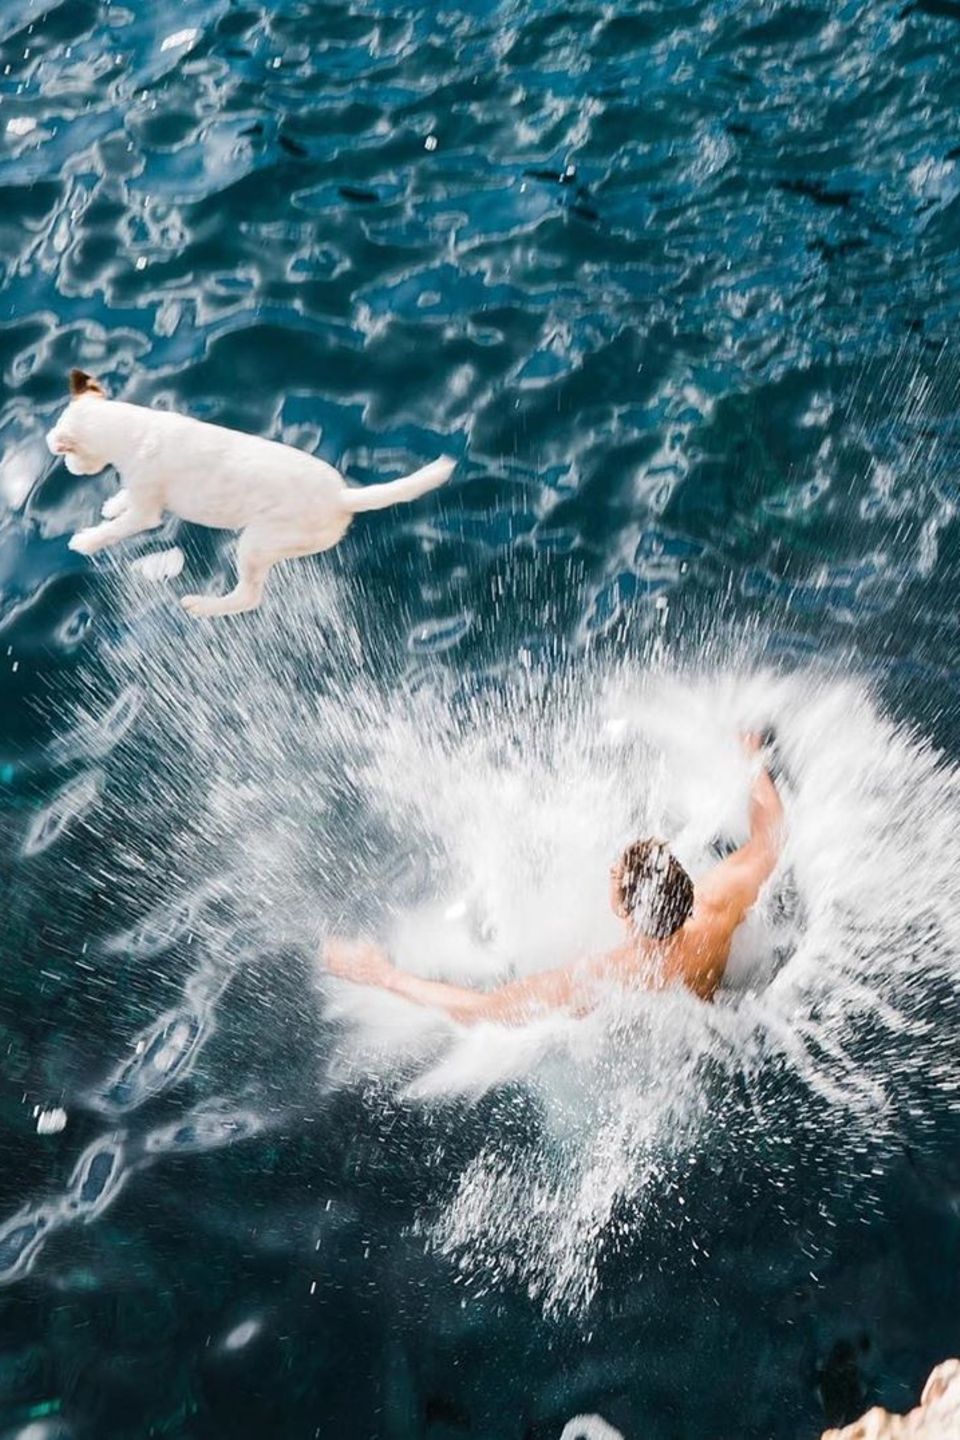 Florian David Fitz springt von einer Klippe ins Wasser